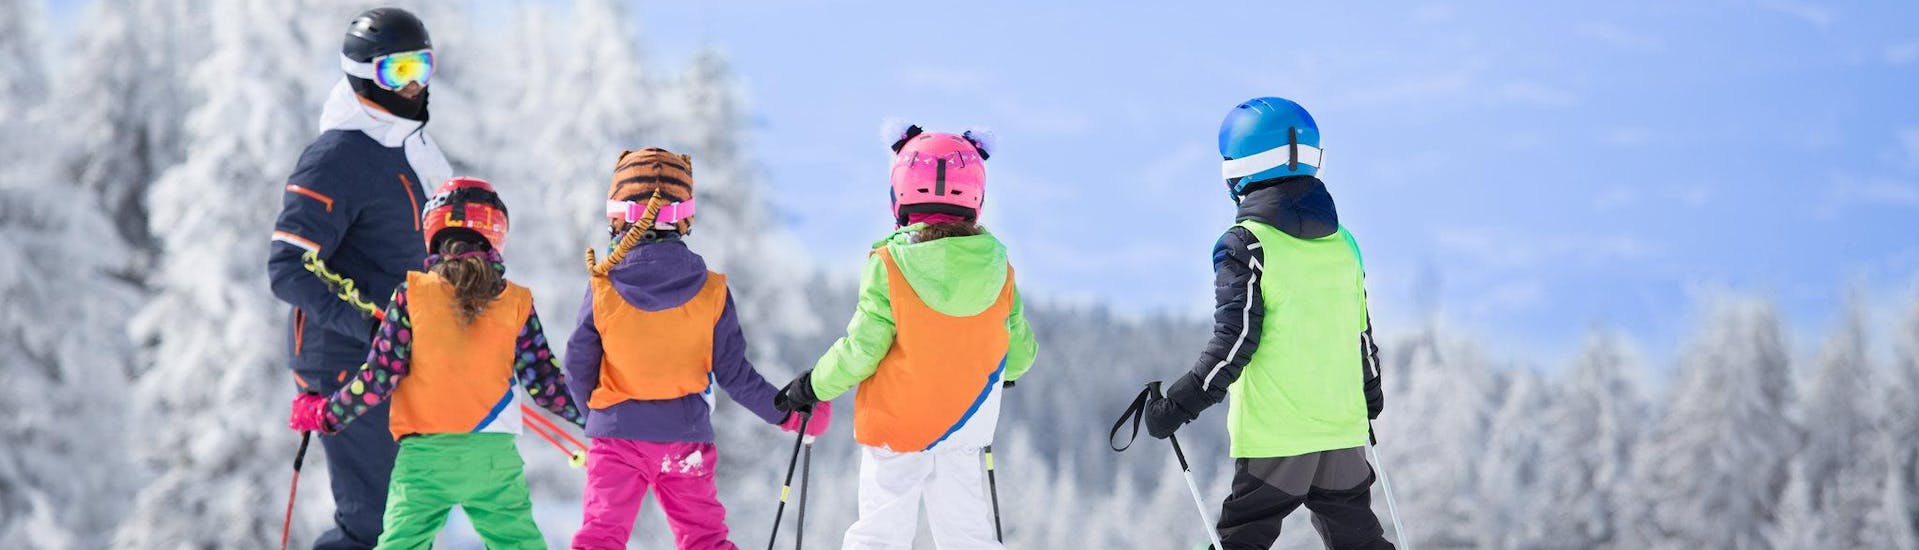 3 skieurs se préparent avant un cours de ski en anglais dans la destination de ski Tarvisio/Monte Lussari.